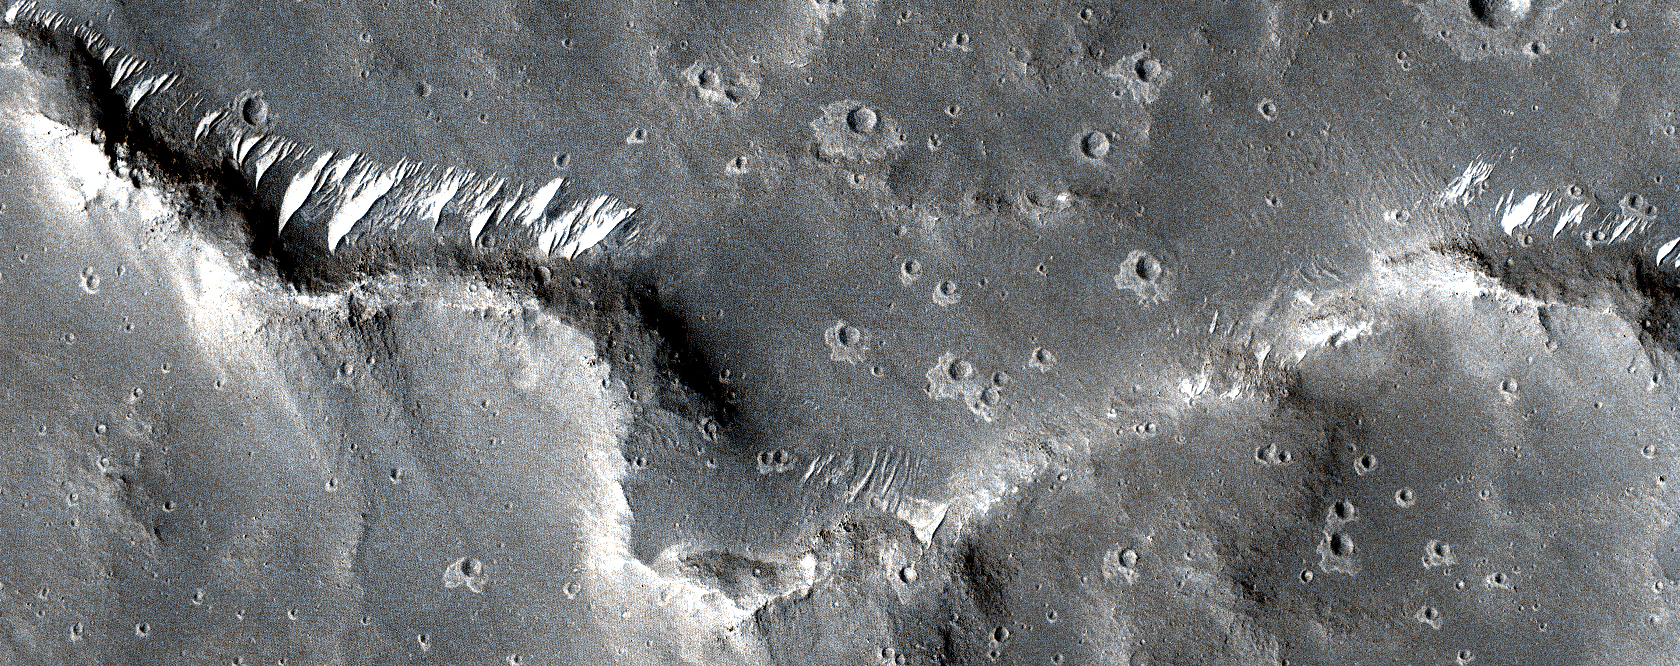 Sinuous Ridges in Elysium Planitia